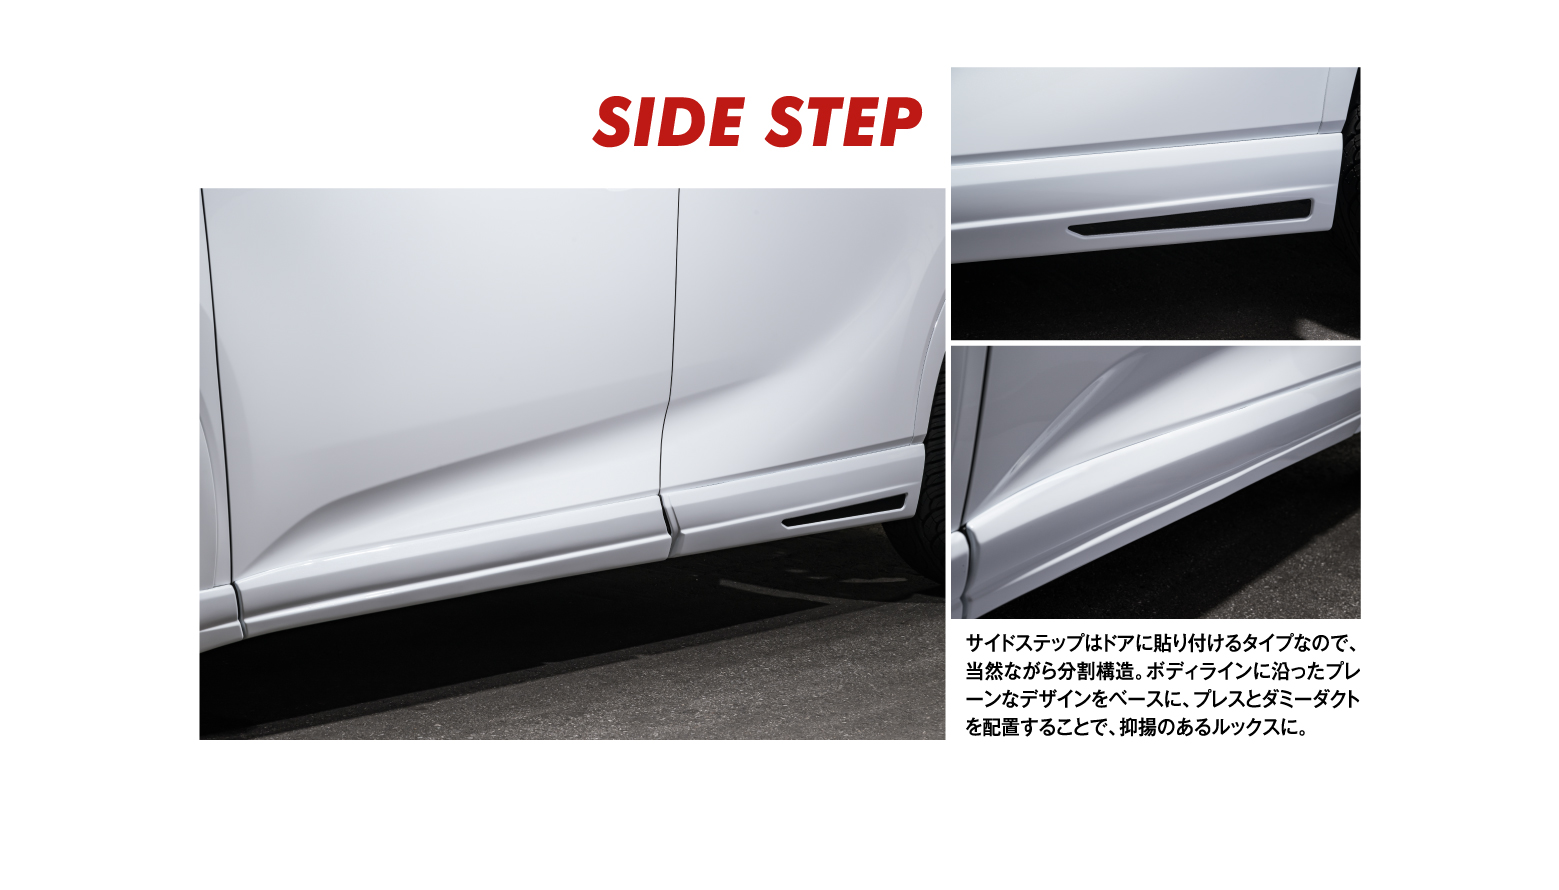 SIDE STEP/サイドステップはドアに貼り付けるタイプなので、当然ながら分割構造。ボディラインに沿ったプレーンなデザインをベースに、プレスとダミーダクトを配置することで、抑揚のあるルックスに。